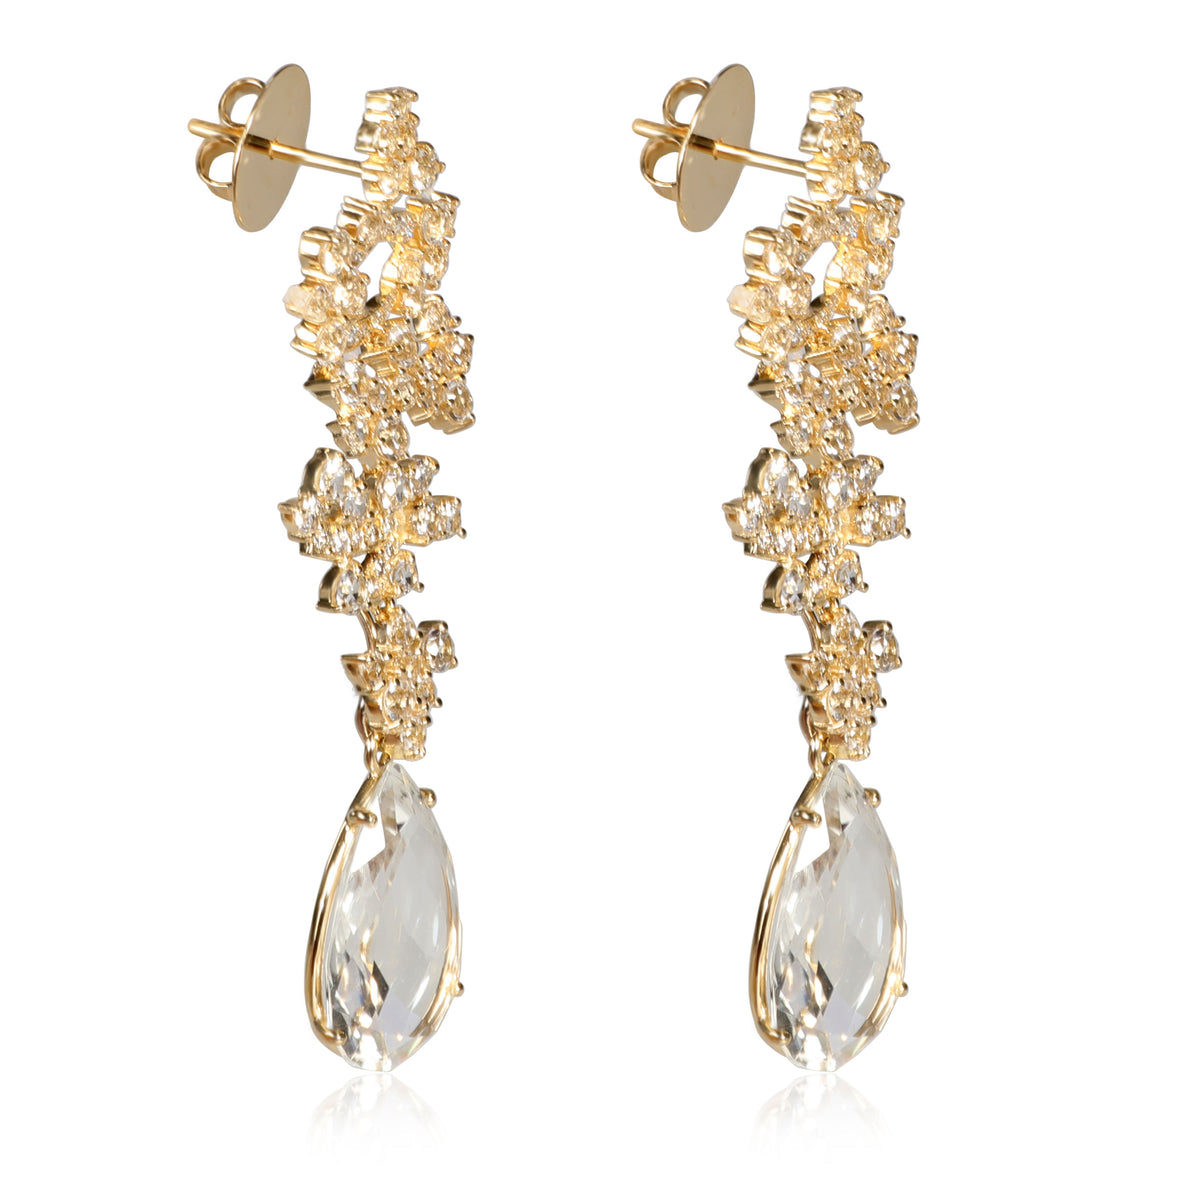 White Topaz & Diamond Drop Earrings in 18KT Yellow Gold 0.37 CTW